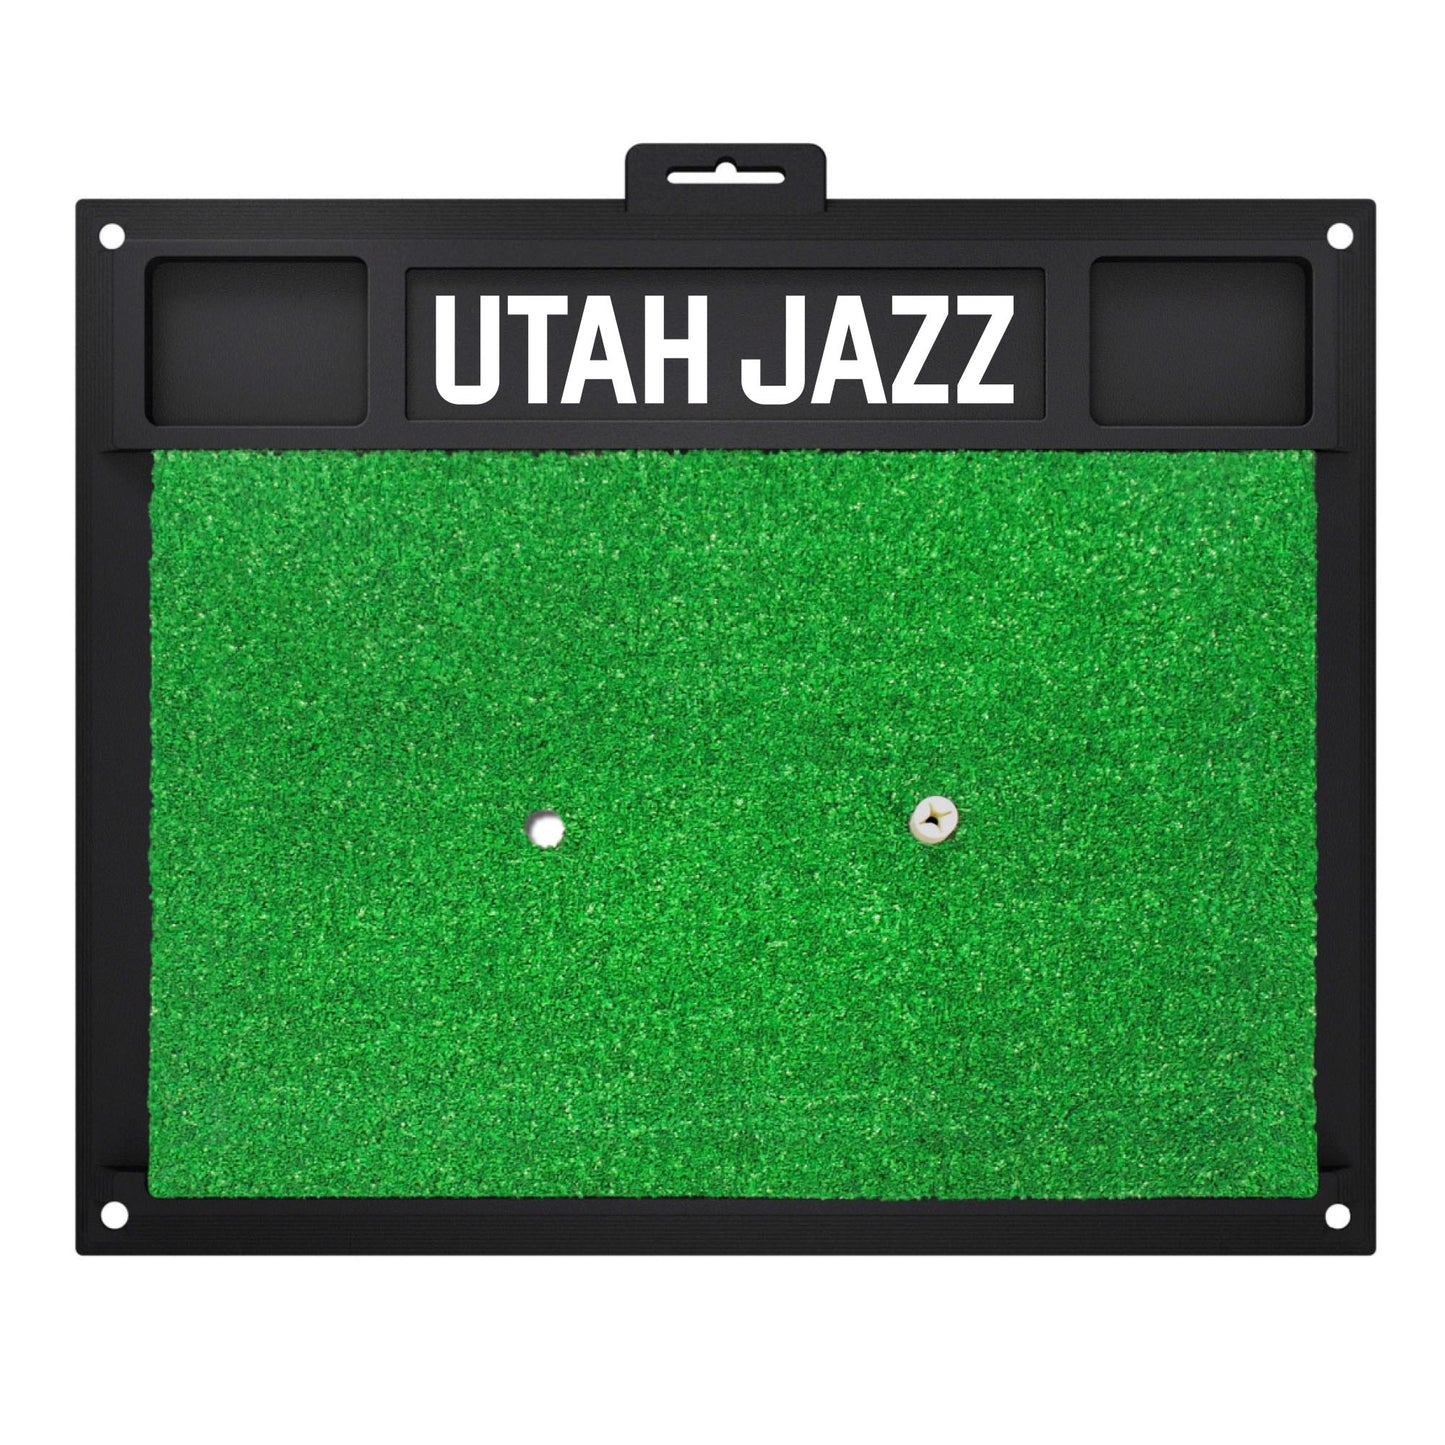 Utah Jazz Golf Hitting Mat by Fanmats